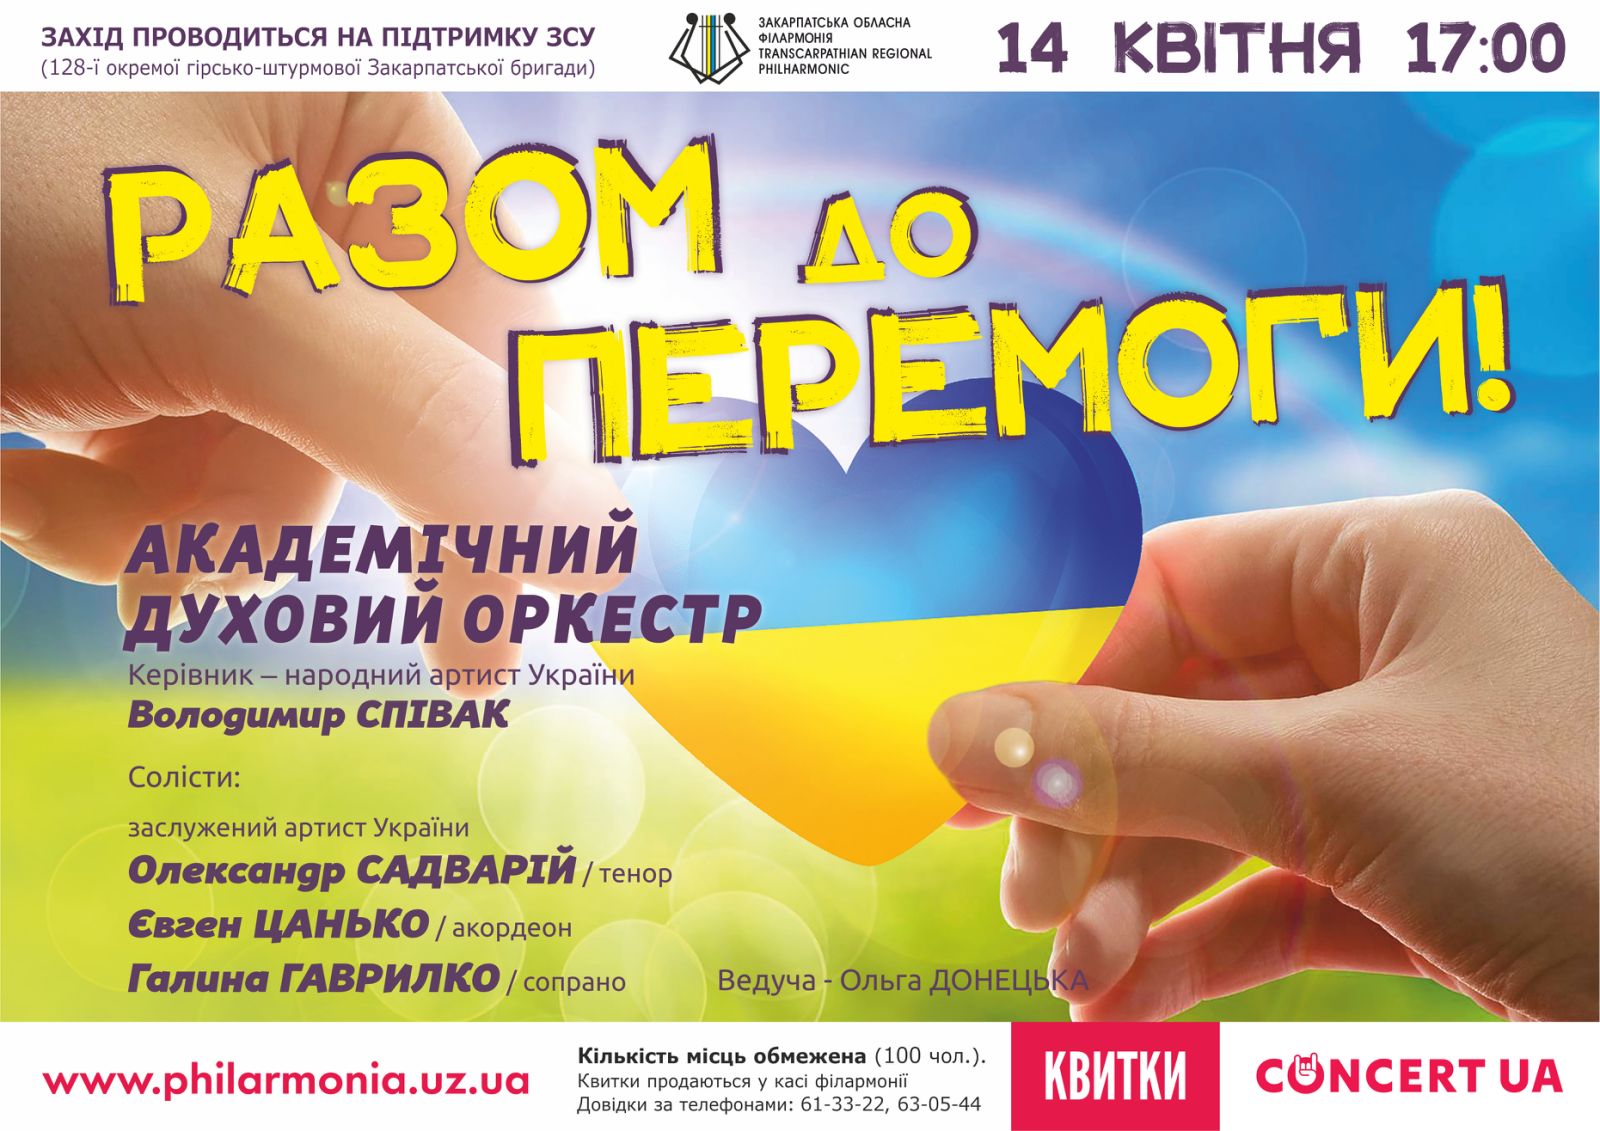 В Ужгороді відбудеться концерт Академічного духового оркестру обласної філармоні "Разом до перемоги"